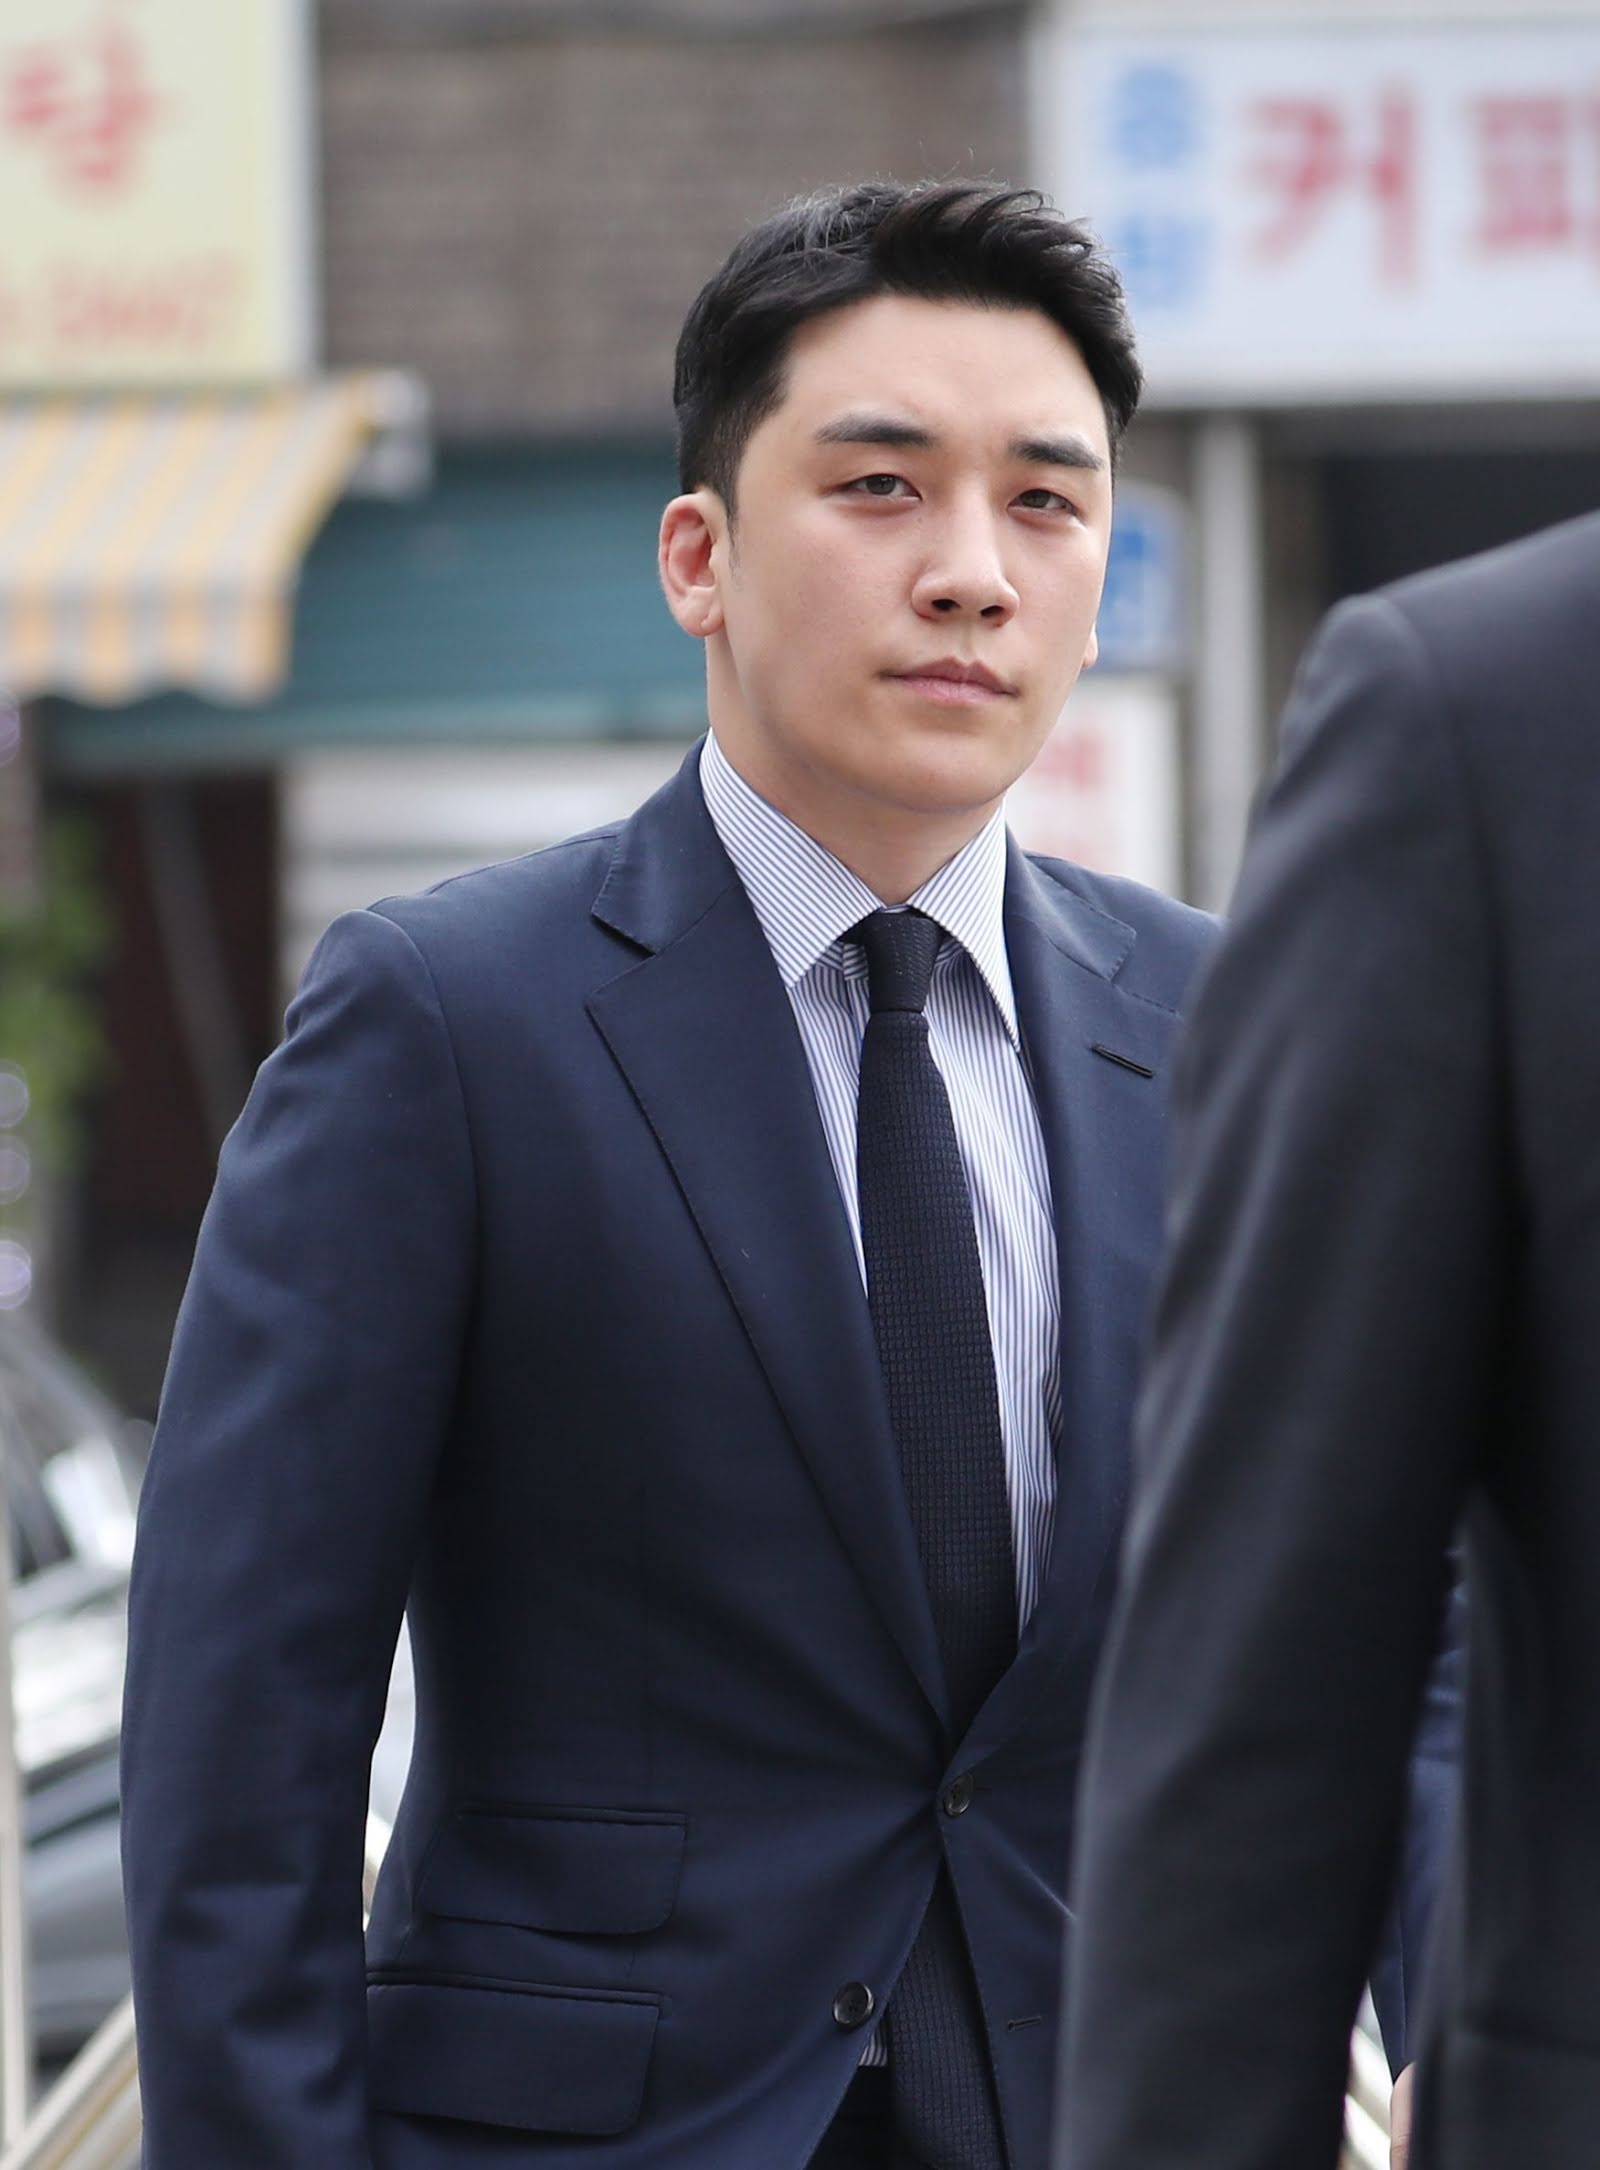 Seungri (Cựu thành viên BIGBANG) ra tù vào hôm nay, netizen phẫn nộ vì lý do này - ảnh 1